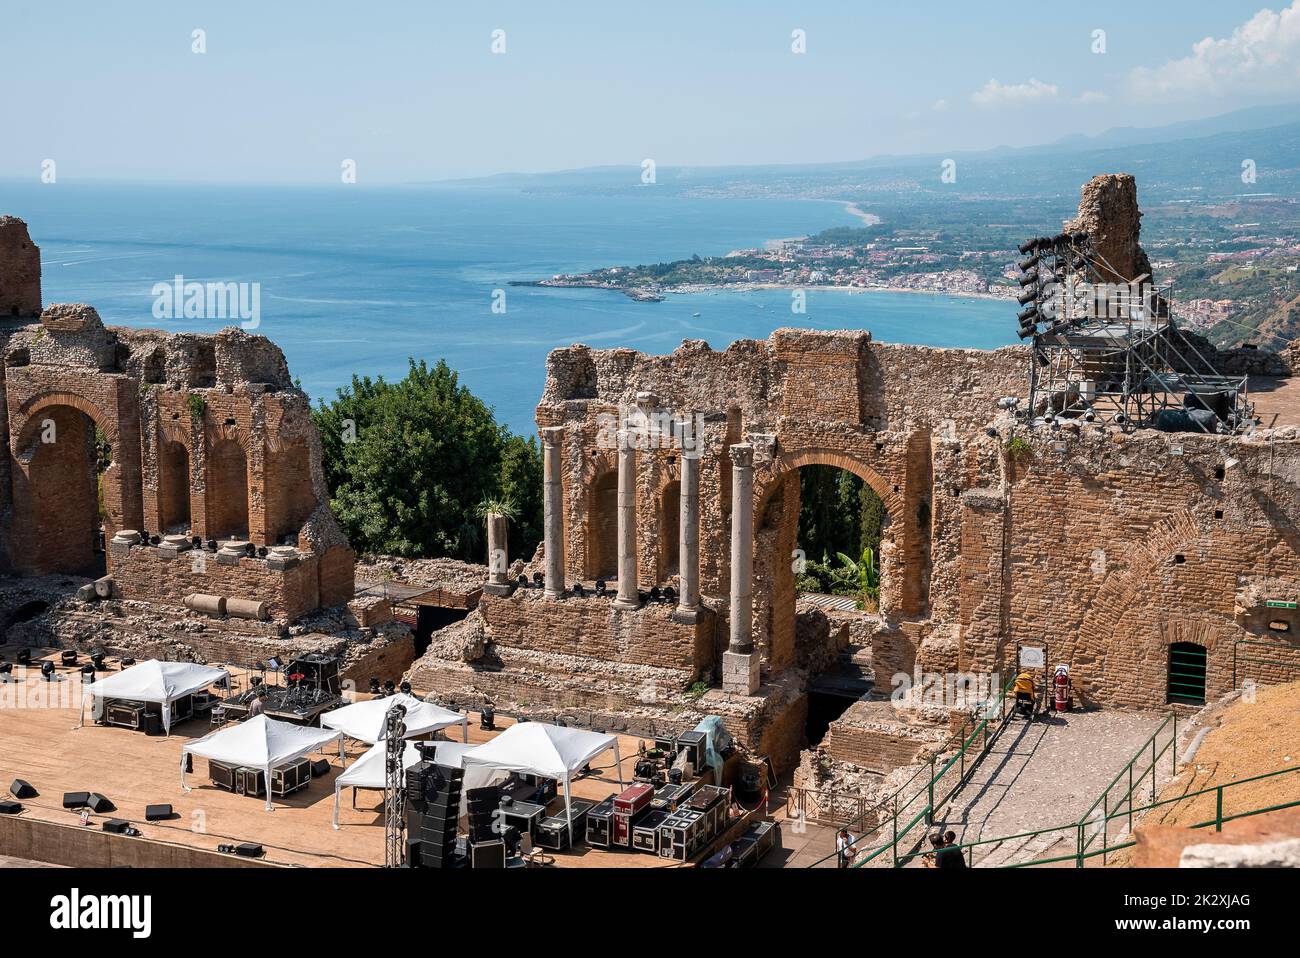 Vista panorámica de las antiguas ruinas del antiguo teatro griego en la costa mediterránea Foto de stock